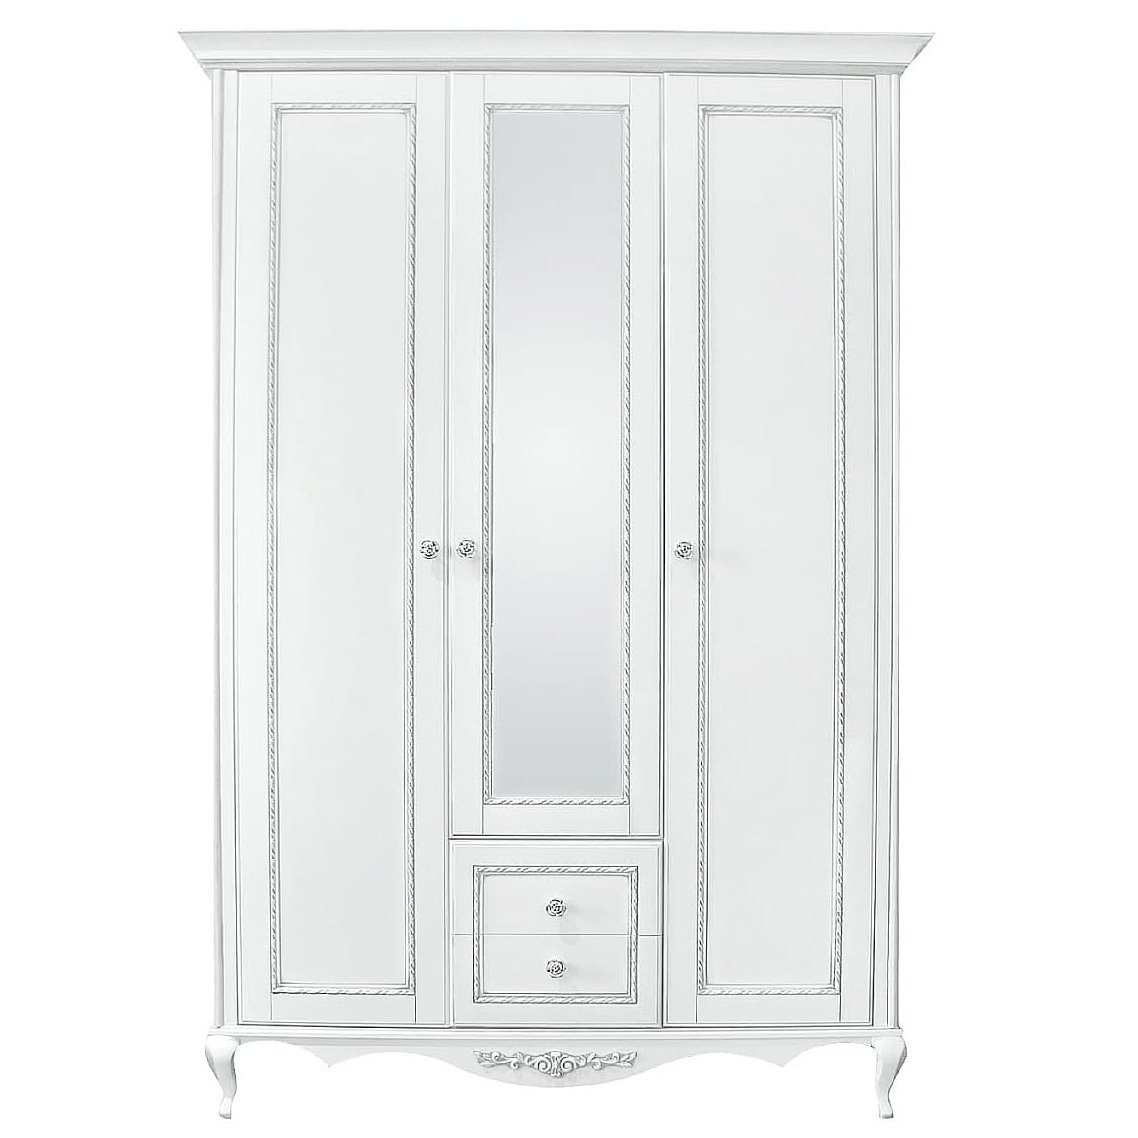 Шкаф платяной Timber Неаполь, 3-х дверный с зеркалом 159x65x227 см, цвет: белый с серебром (Т-523/BA)Т-523